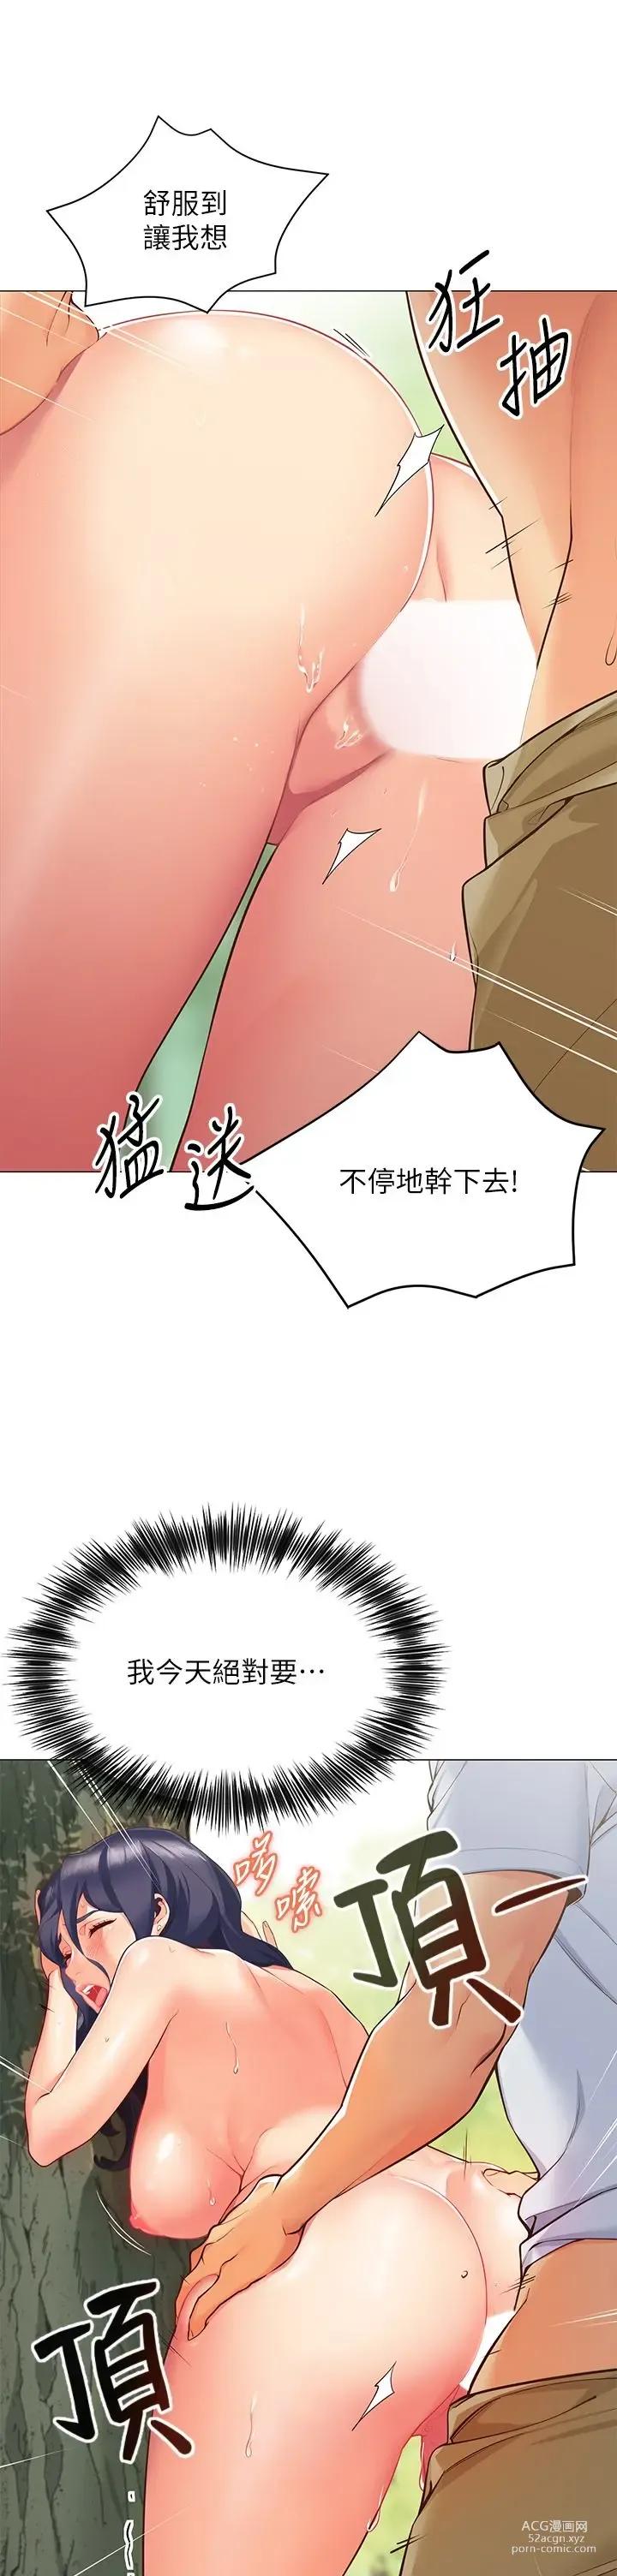 Page 10 of manga 帳篷裡的秘密 1-30话 中文无水印